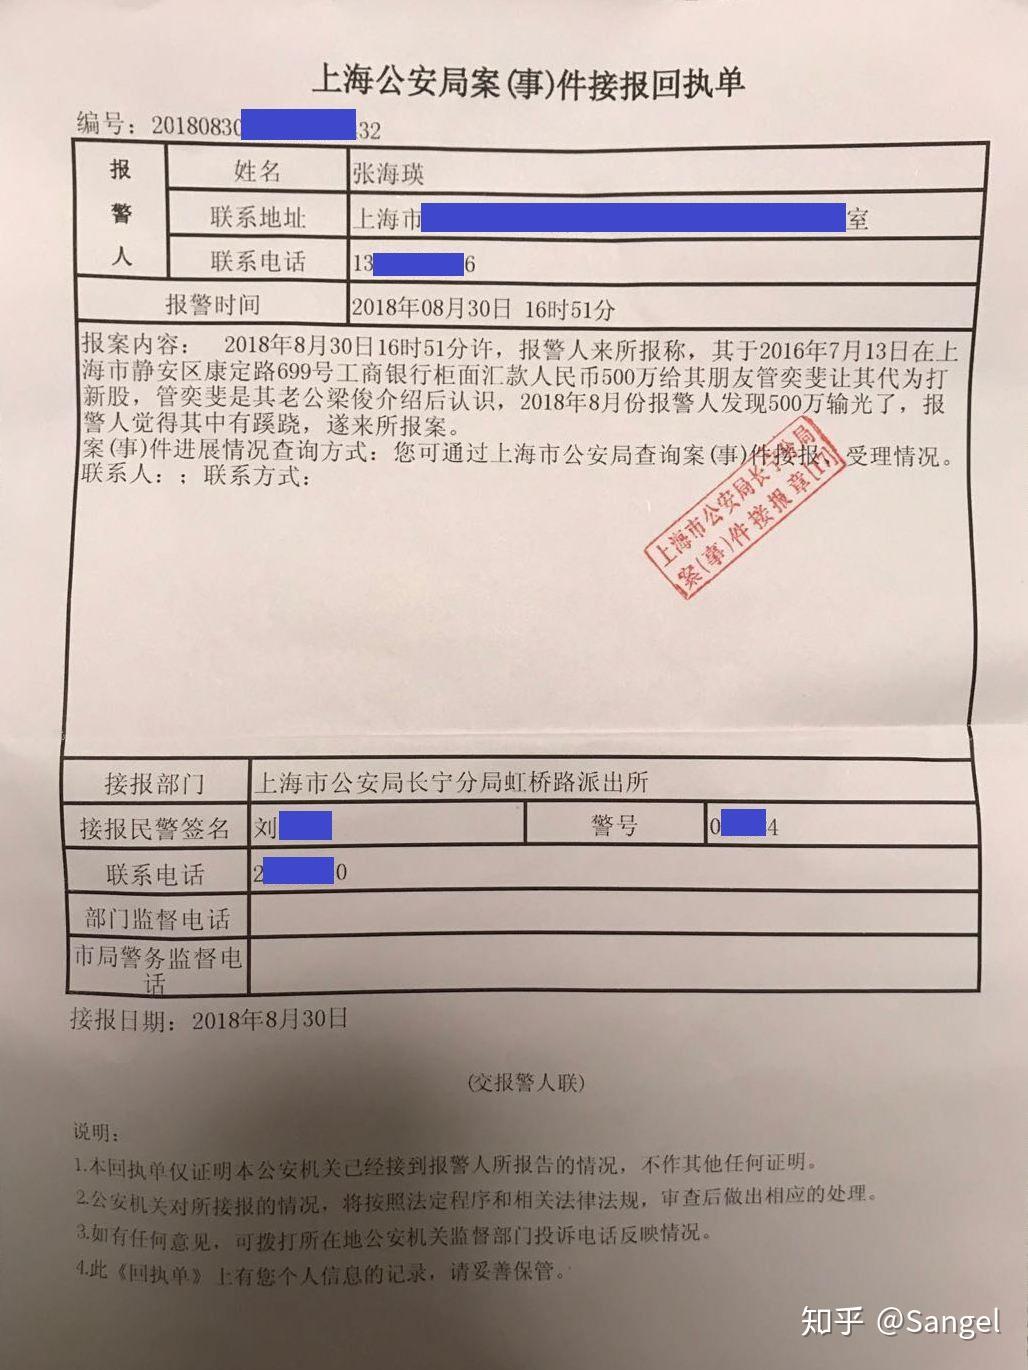 【罗戈网】巴沙鱼行业巨震！昨日上海食药监带队查封涉嫌走私巴沙鱼12条货柜！相关涉案人员已被逮捕！